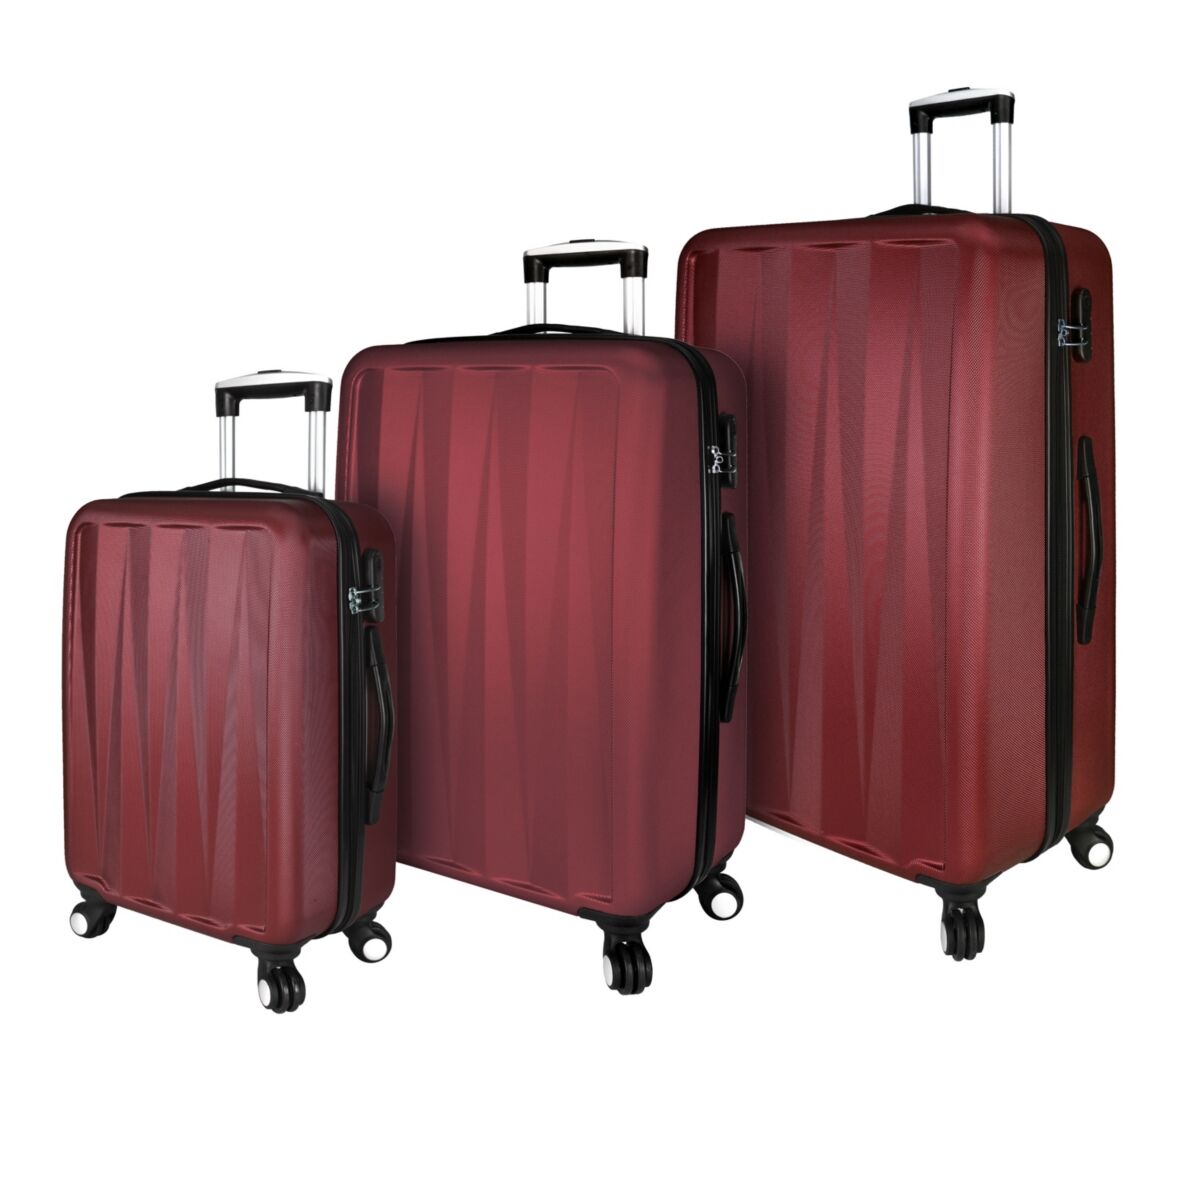 Elite Luggage Verdugo 3-Pc. Hardside Luggage Spinner Set - Dark Red